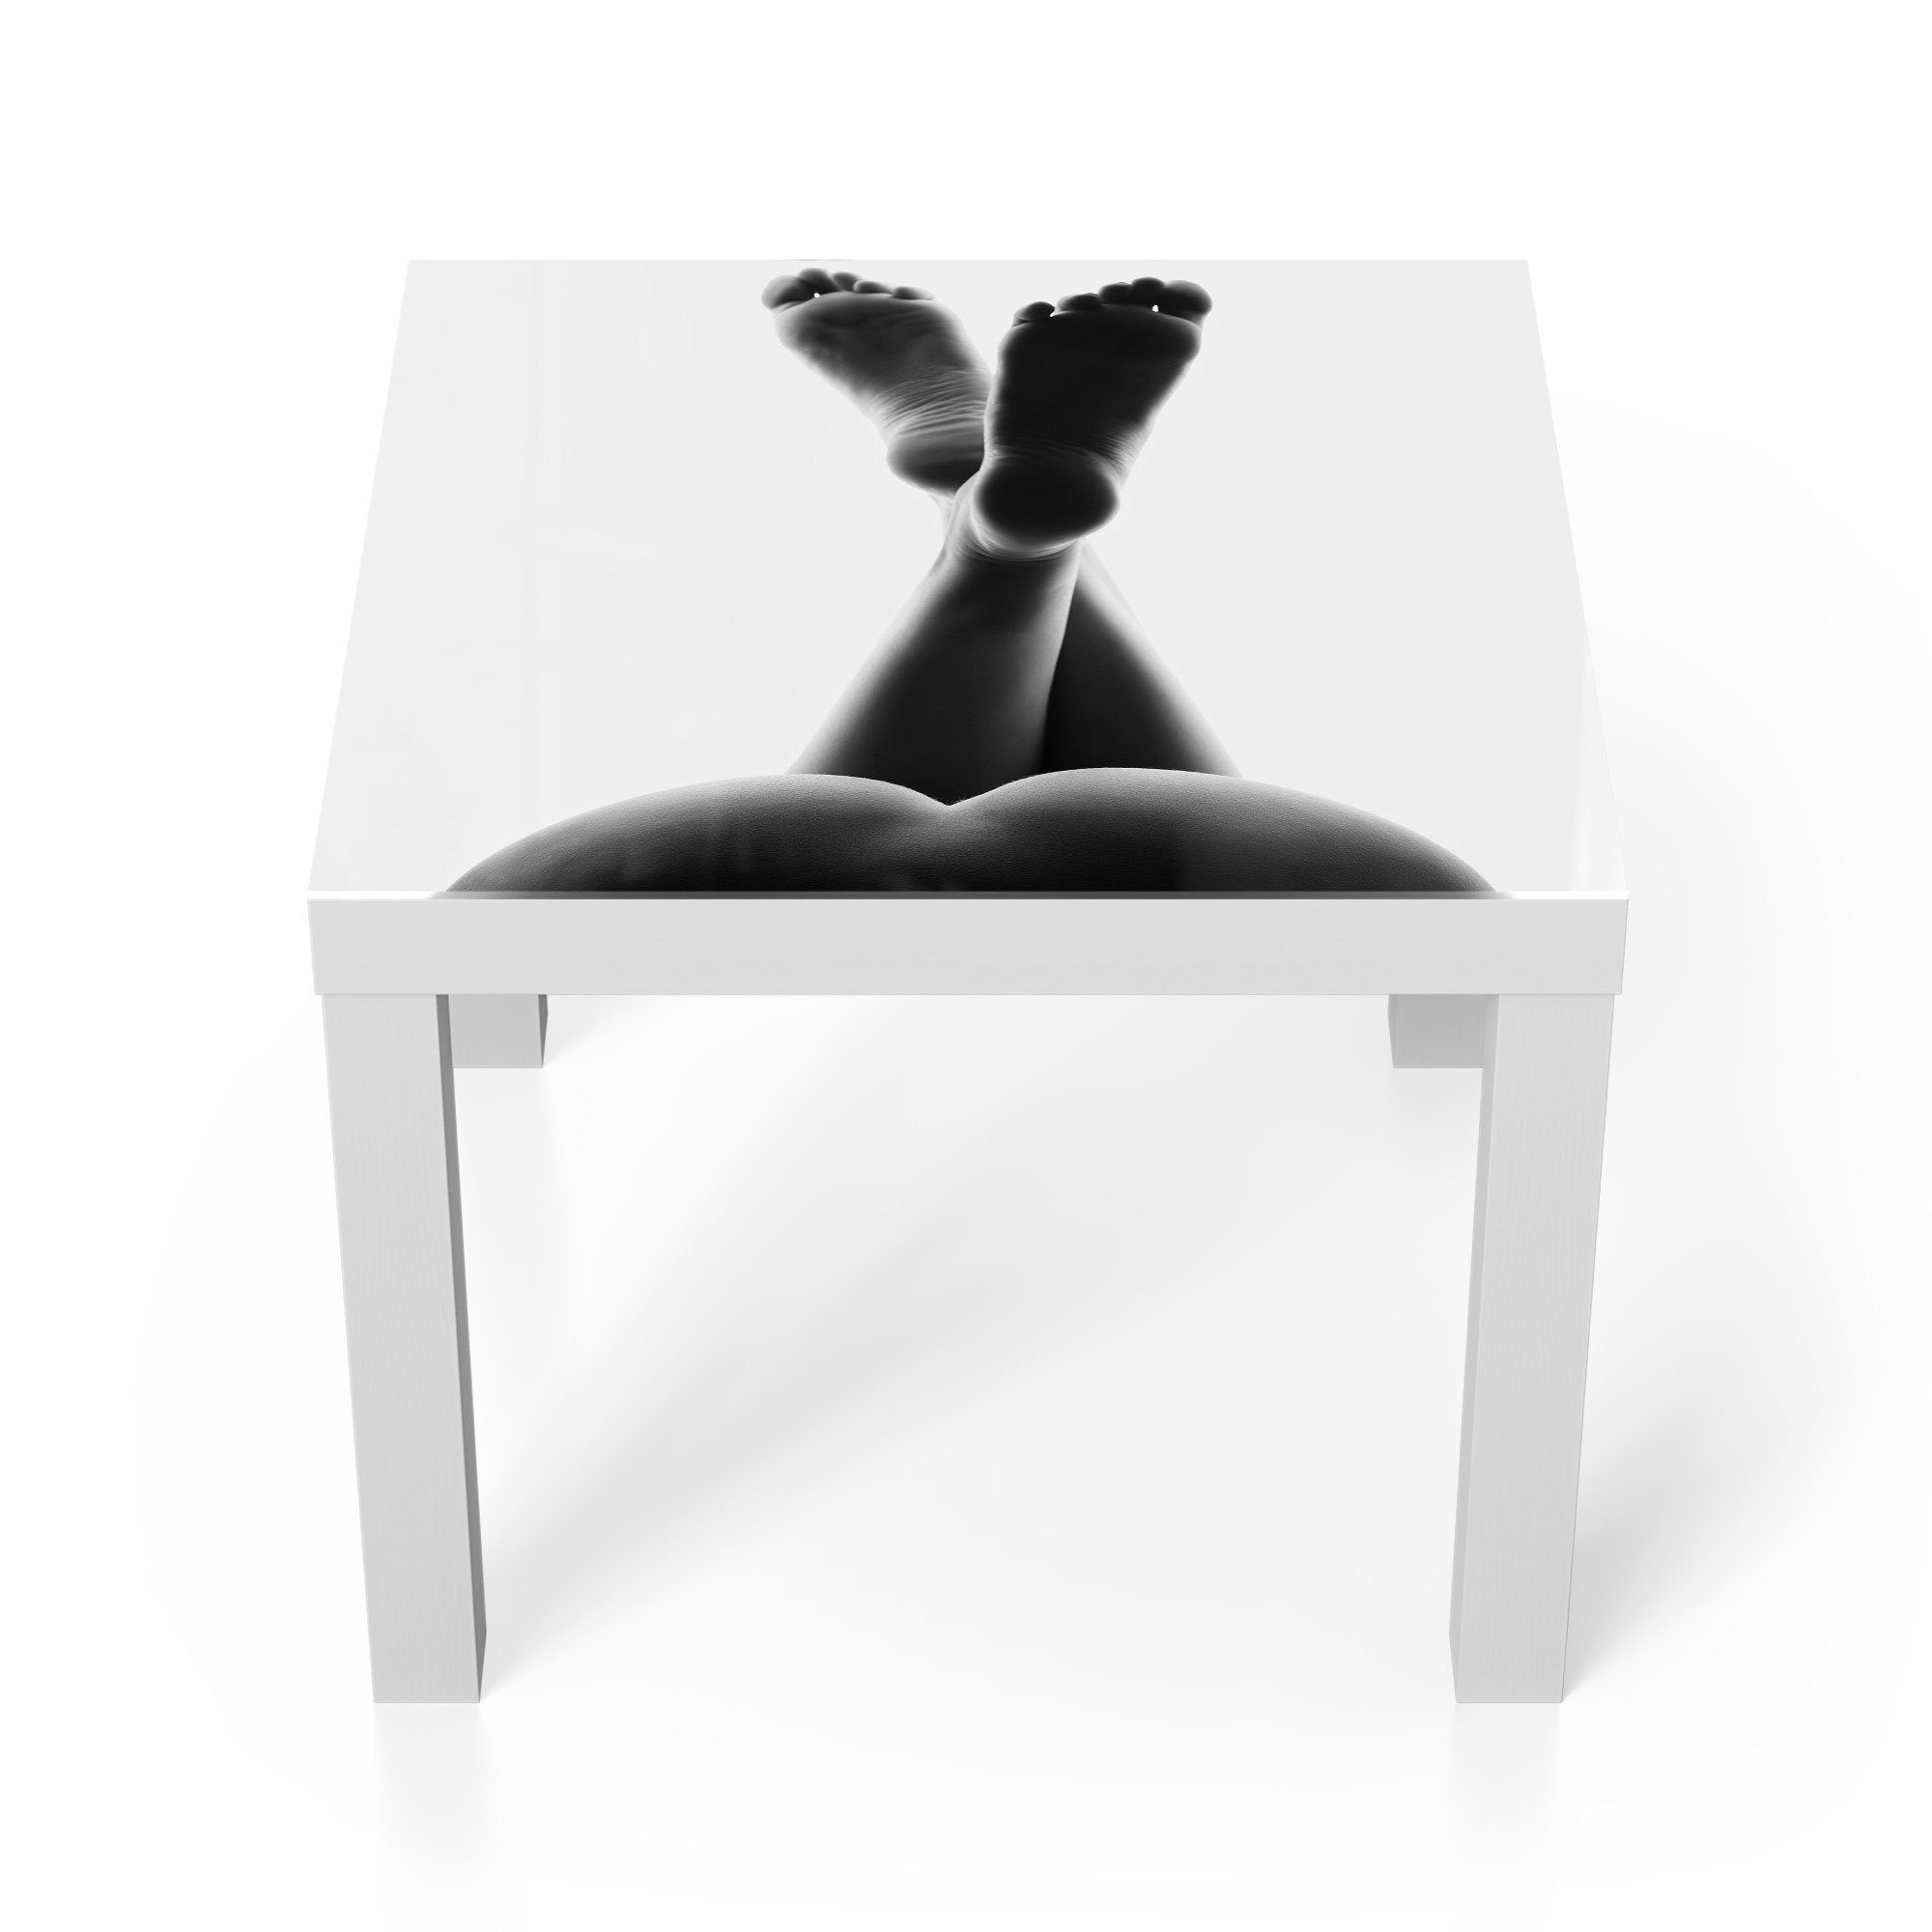 DEQORI Couchtisch 'Weibliche, nackte Beine', Glas Beistelltisch Glastisch modern Weiß